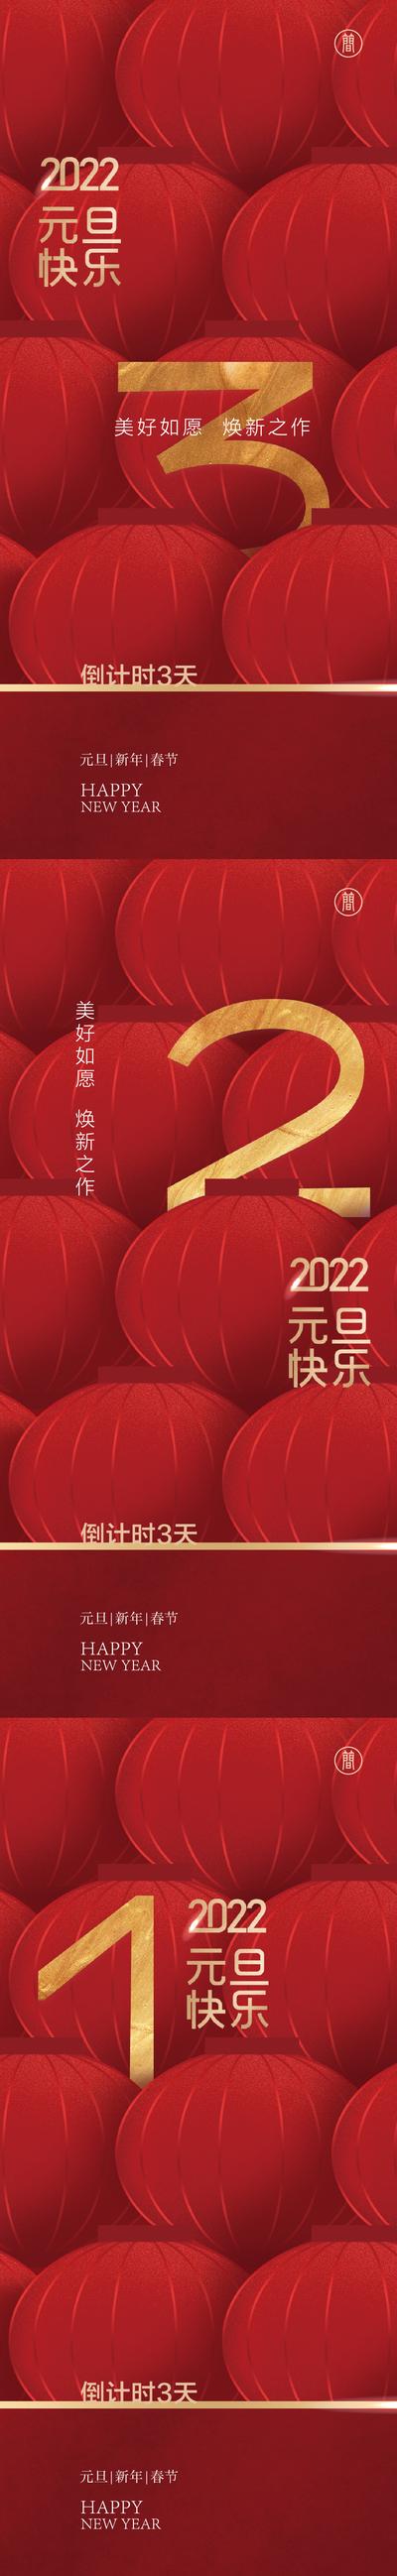 南门网 新年 公历节日 元旦 春节 2022 倒计时 红金 数字 